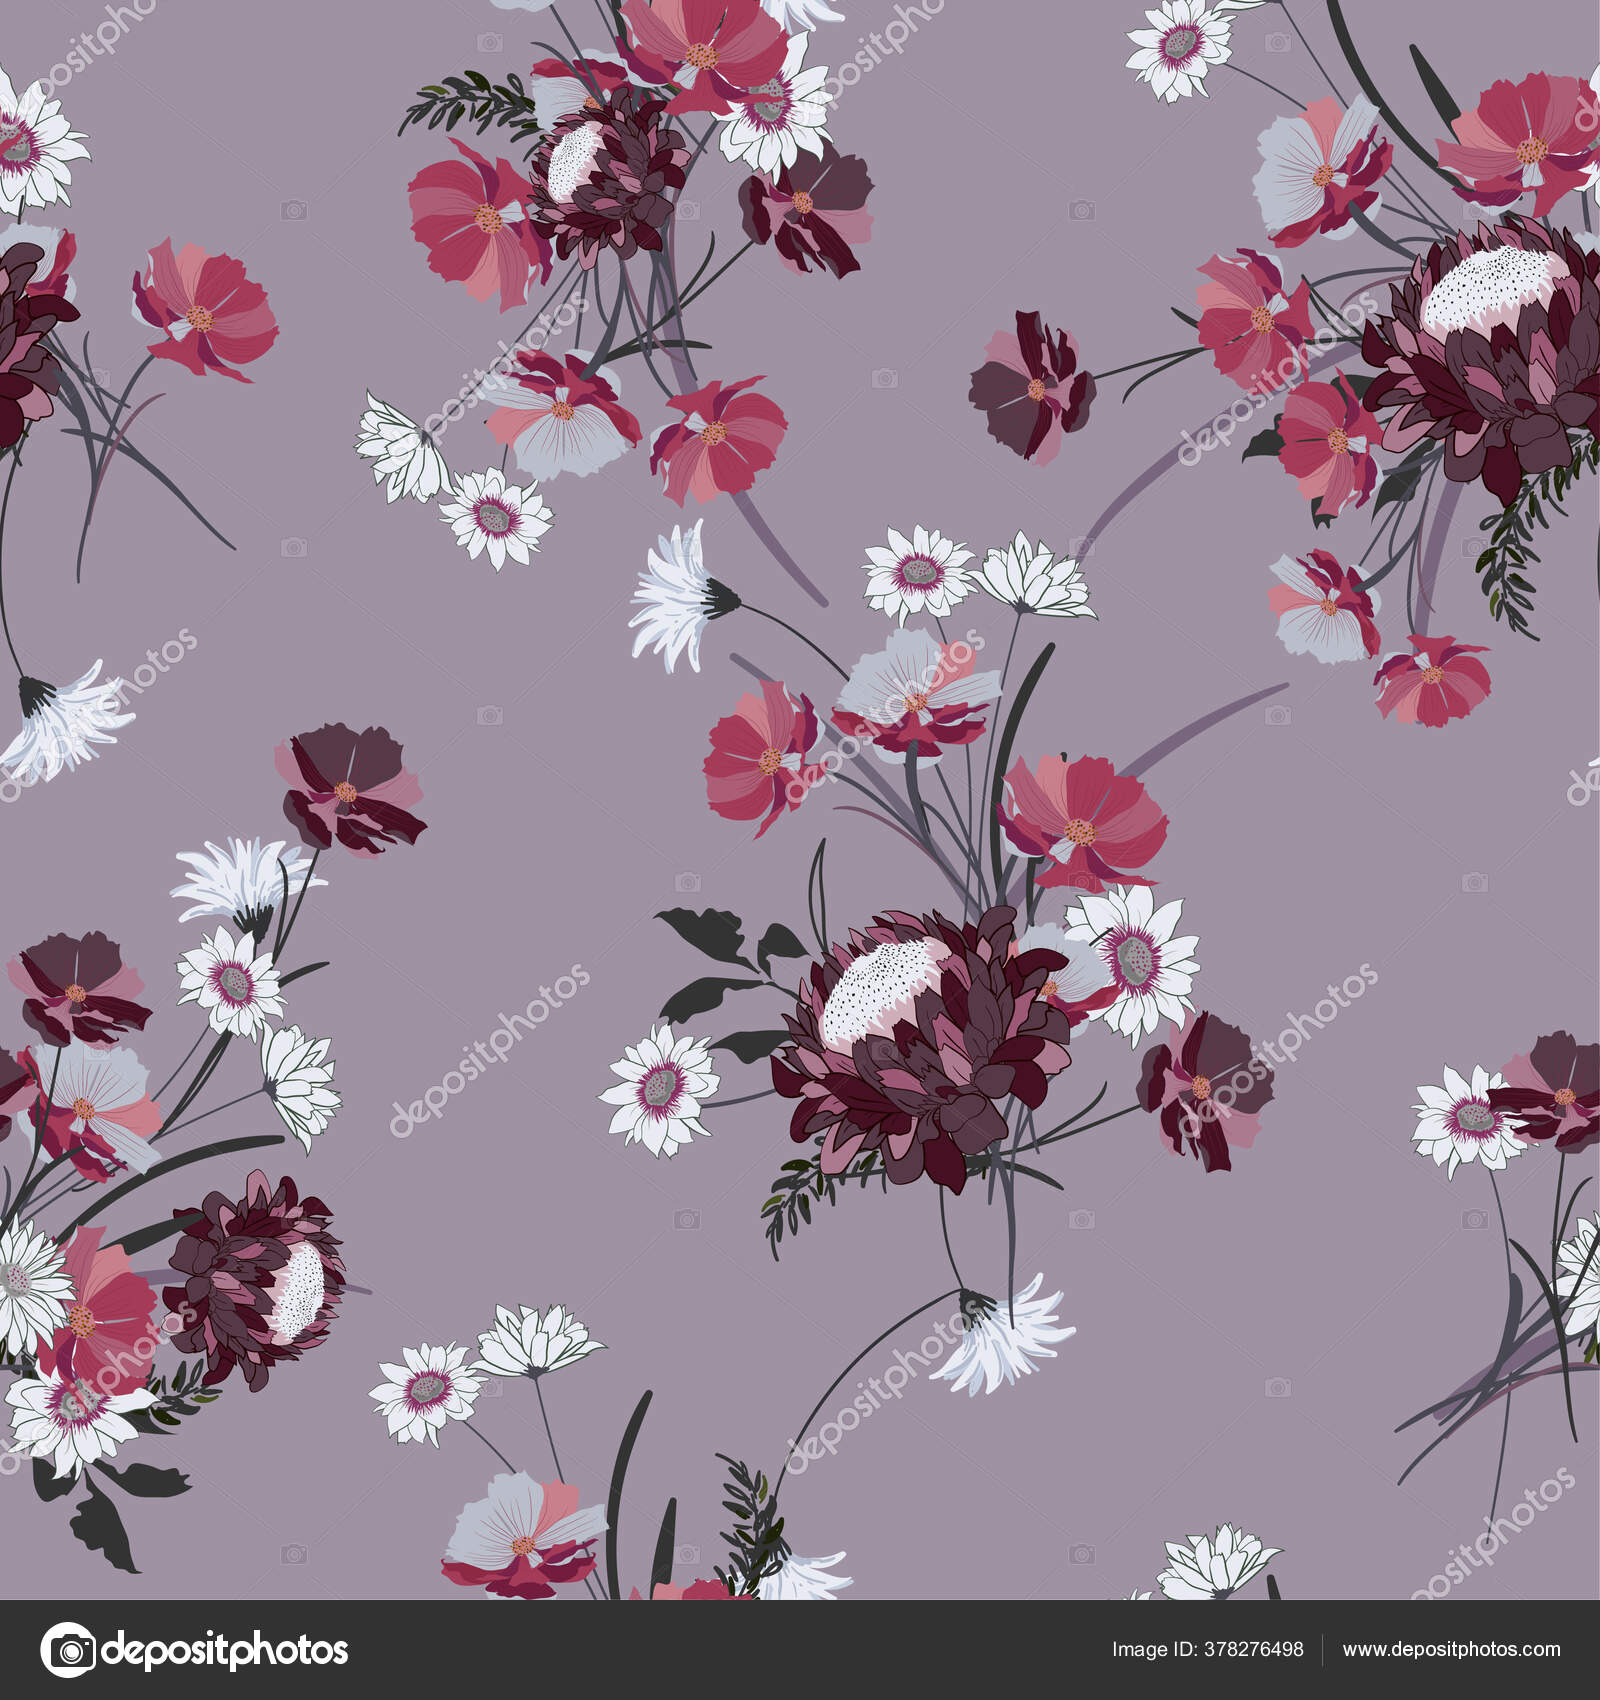 Floral Vintage Digital Papers / Floral Backgrounds / Shabby